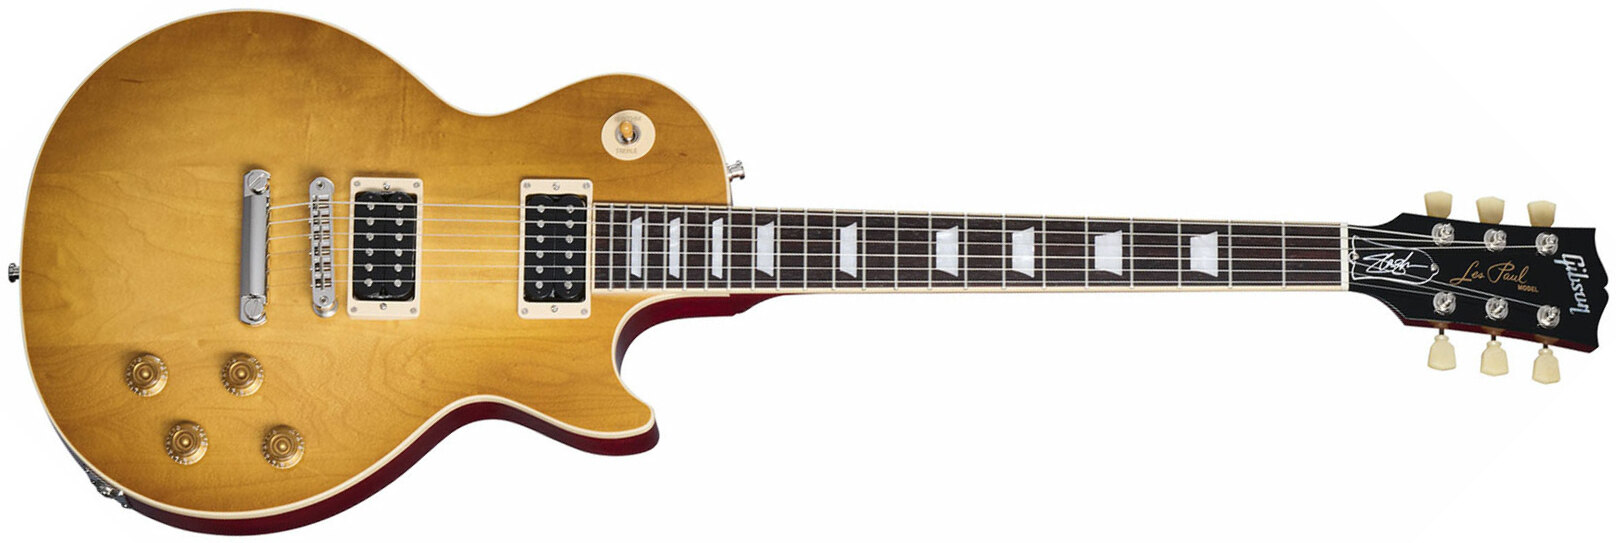 Gibson Slash Les Paul Standard Jessica Signature 2h Ht Rw - Honey Burst With Red Back - Guitare Électrique Single Cut - Main picture